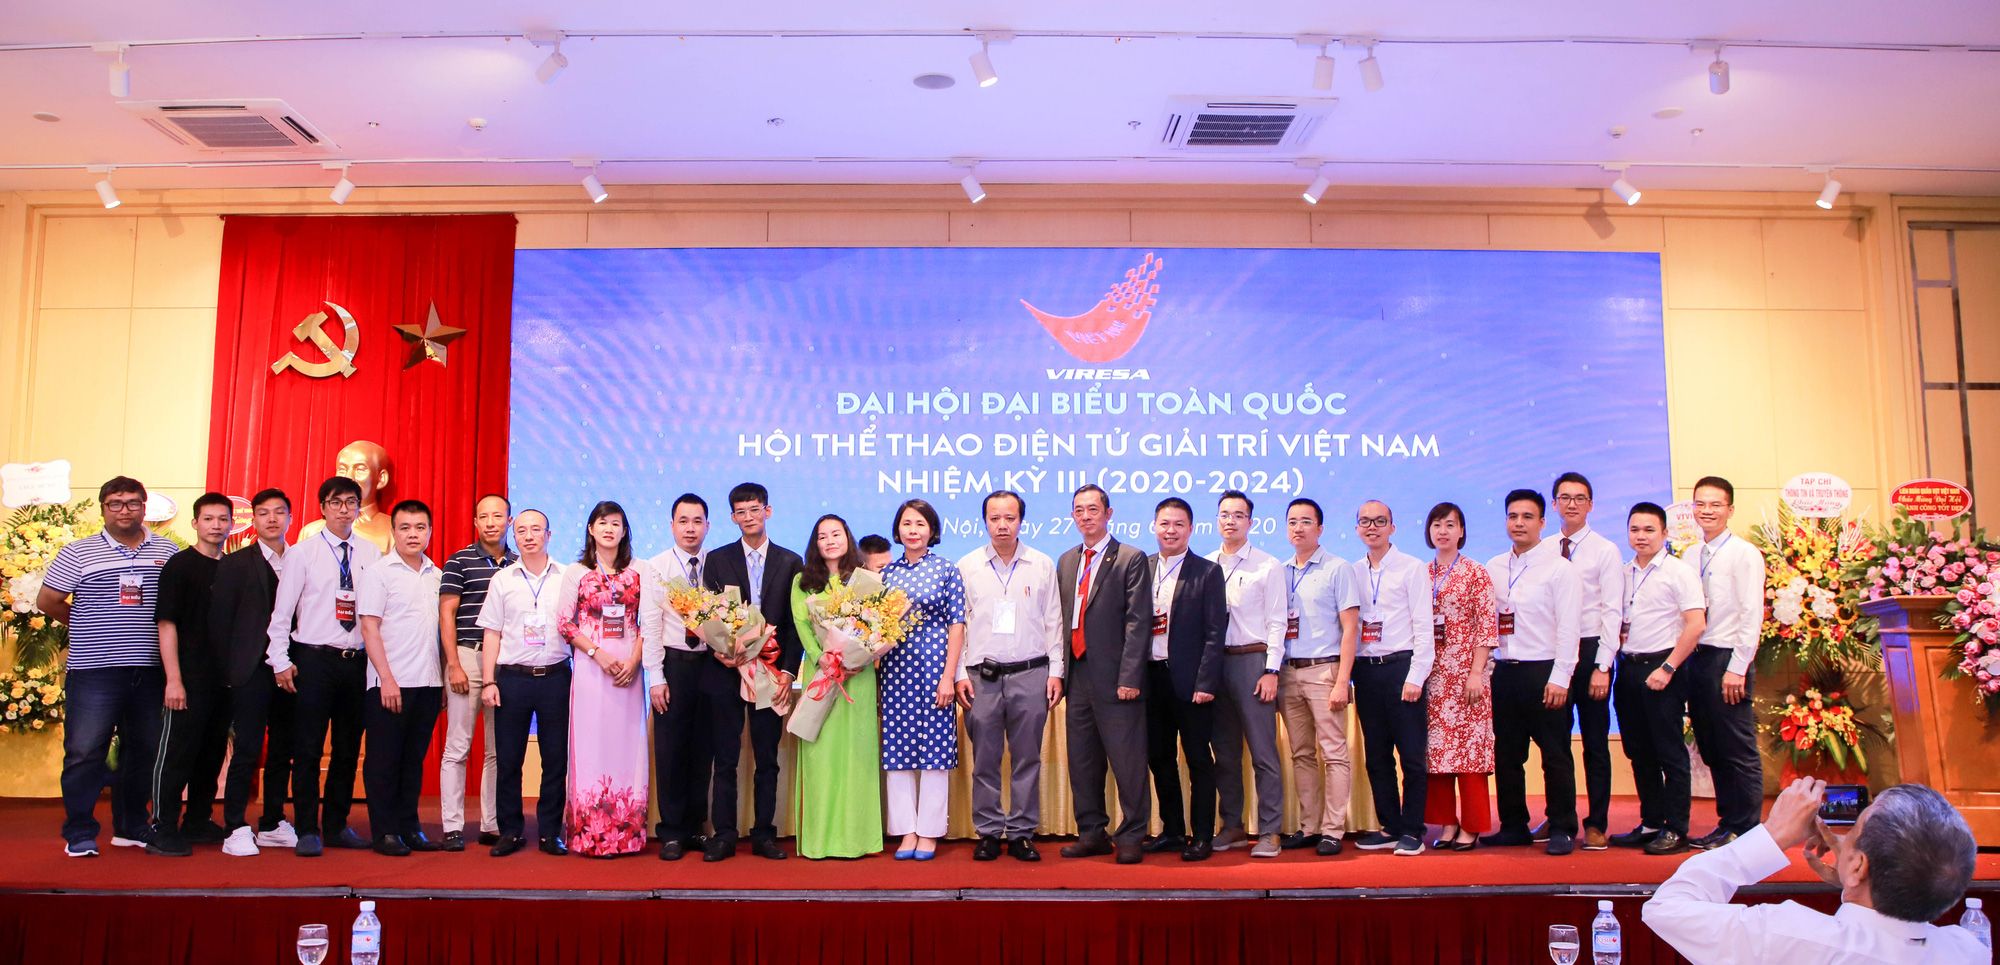 VIRESA | Hội Thể thao điện tử giải trí Việt Nam